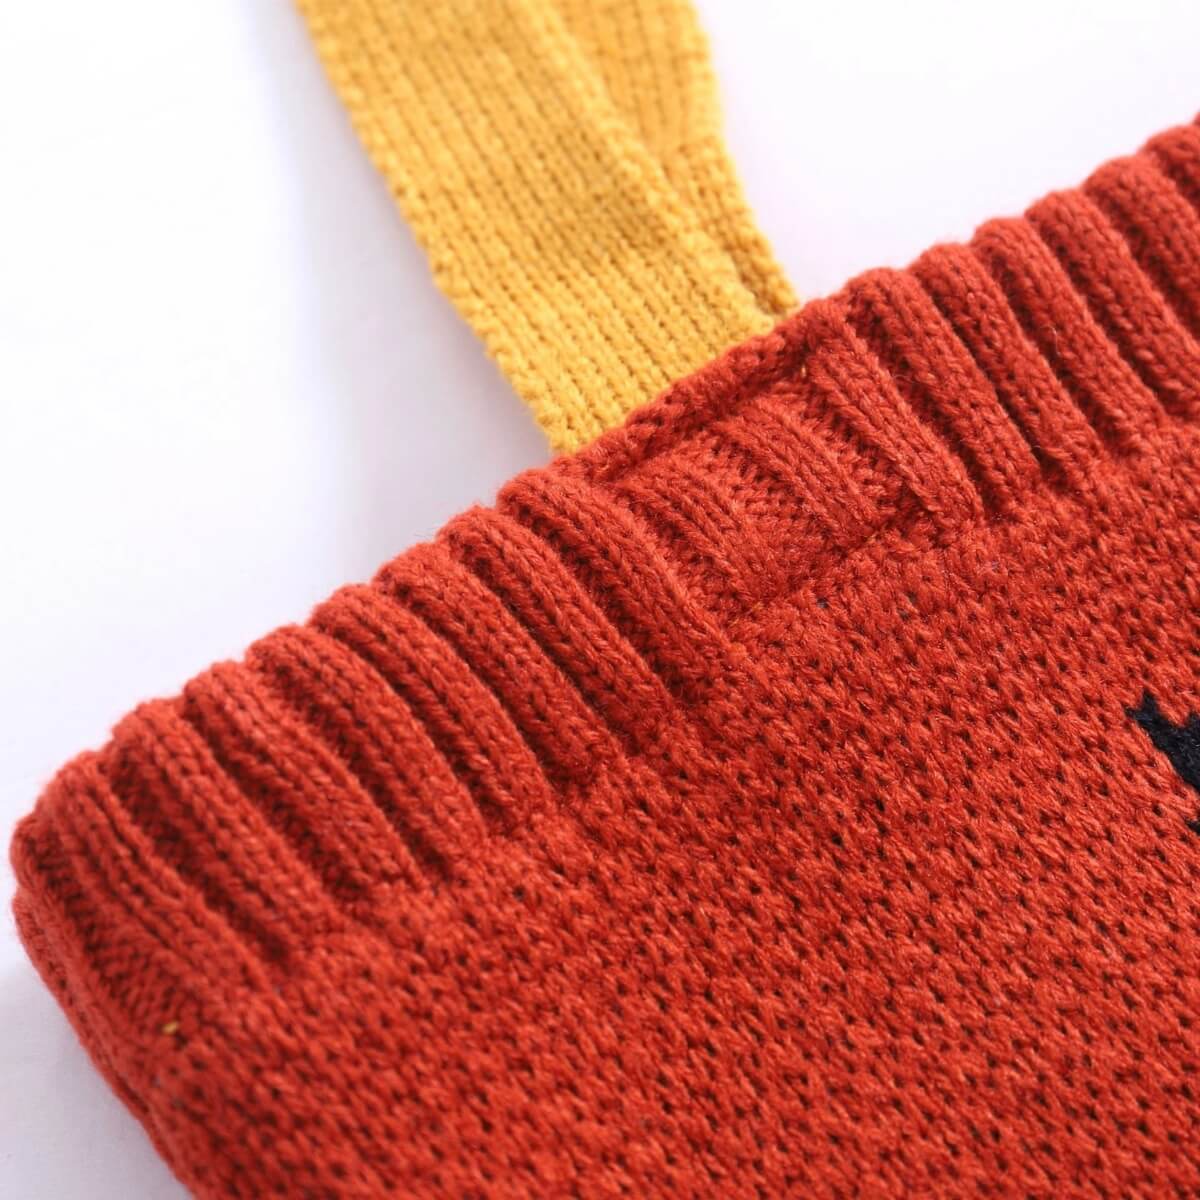 XYANFA Knitting Cuts Of Lamb Knitting Tote Bag Knitter Tote Bag Gift For  Knitter Knitting Lover Gifts Sheep Lamb Lover Gift